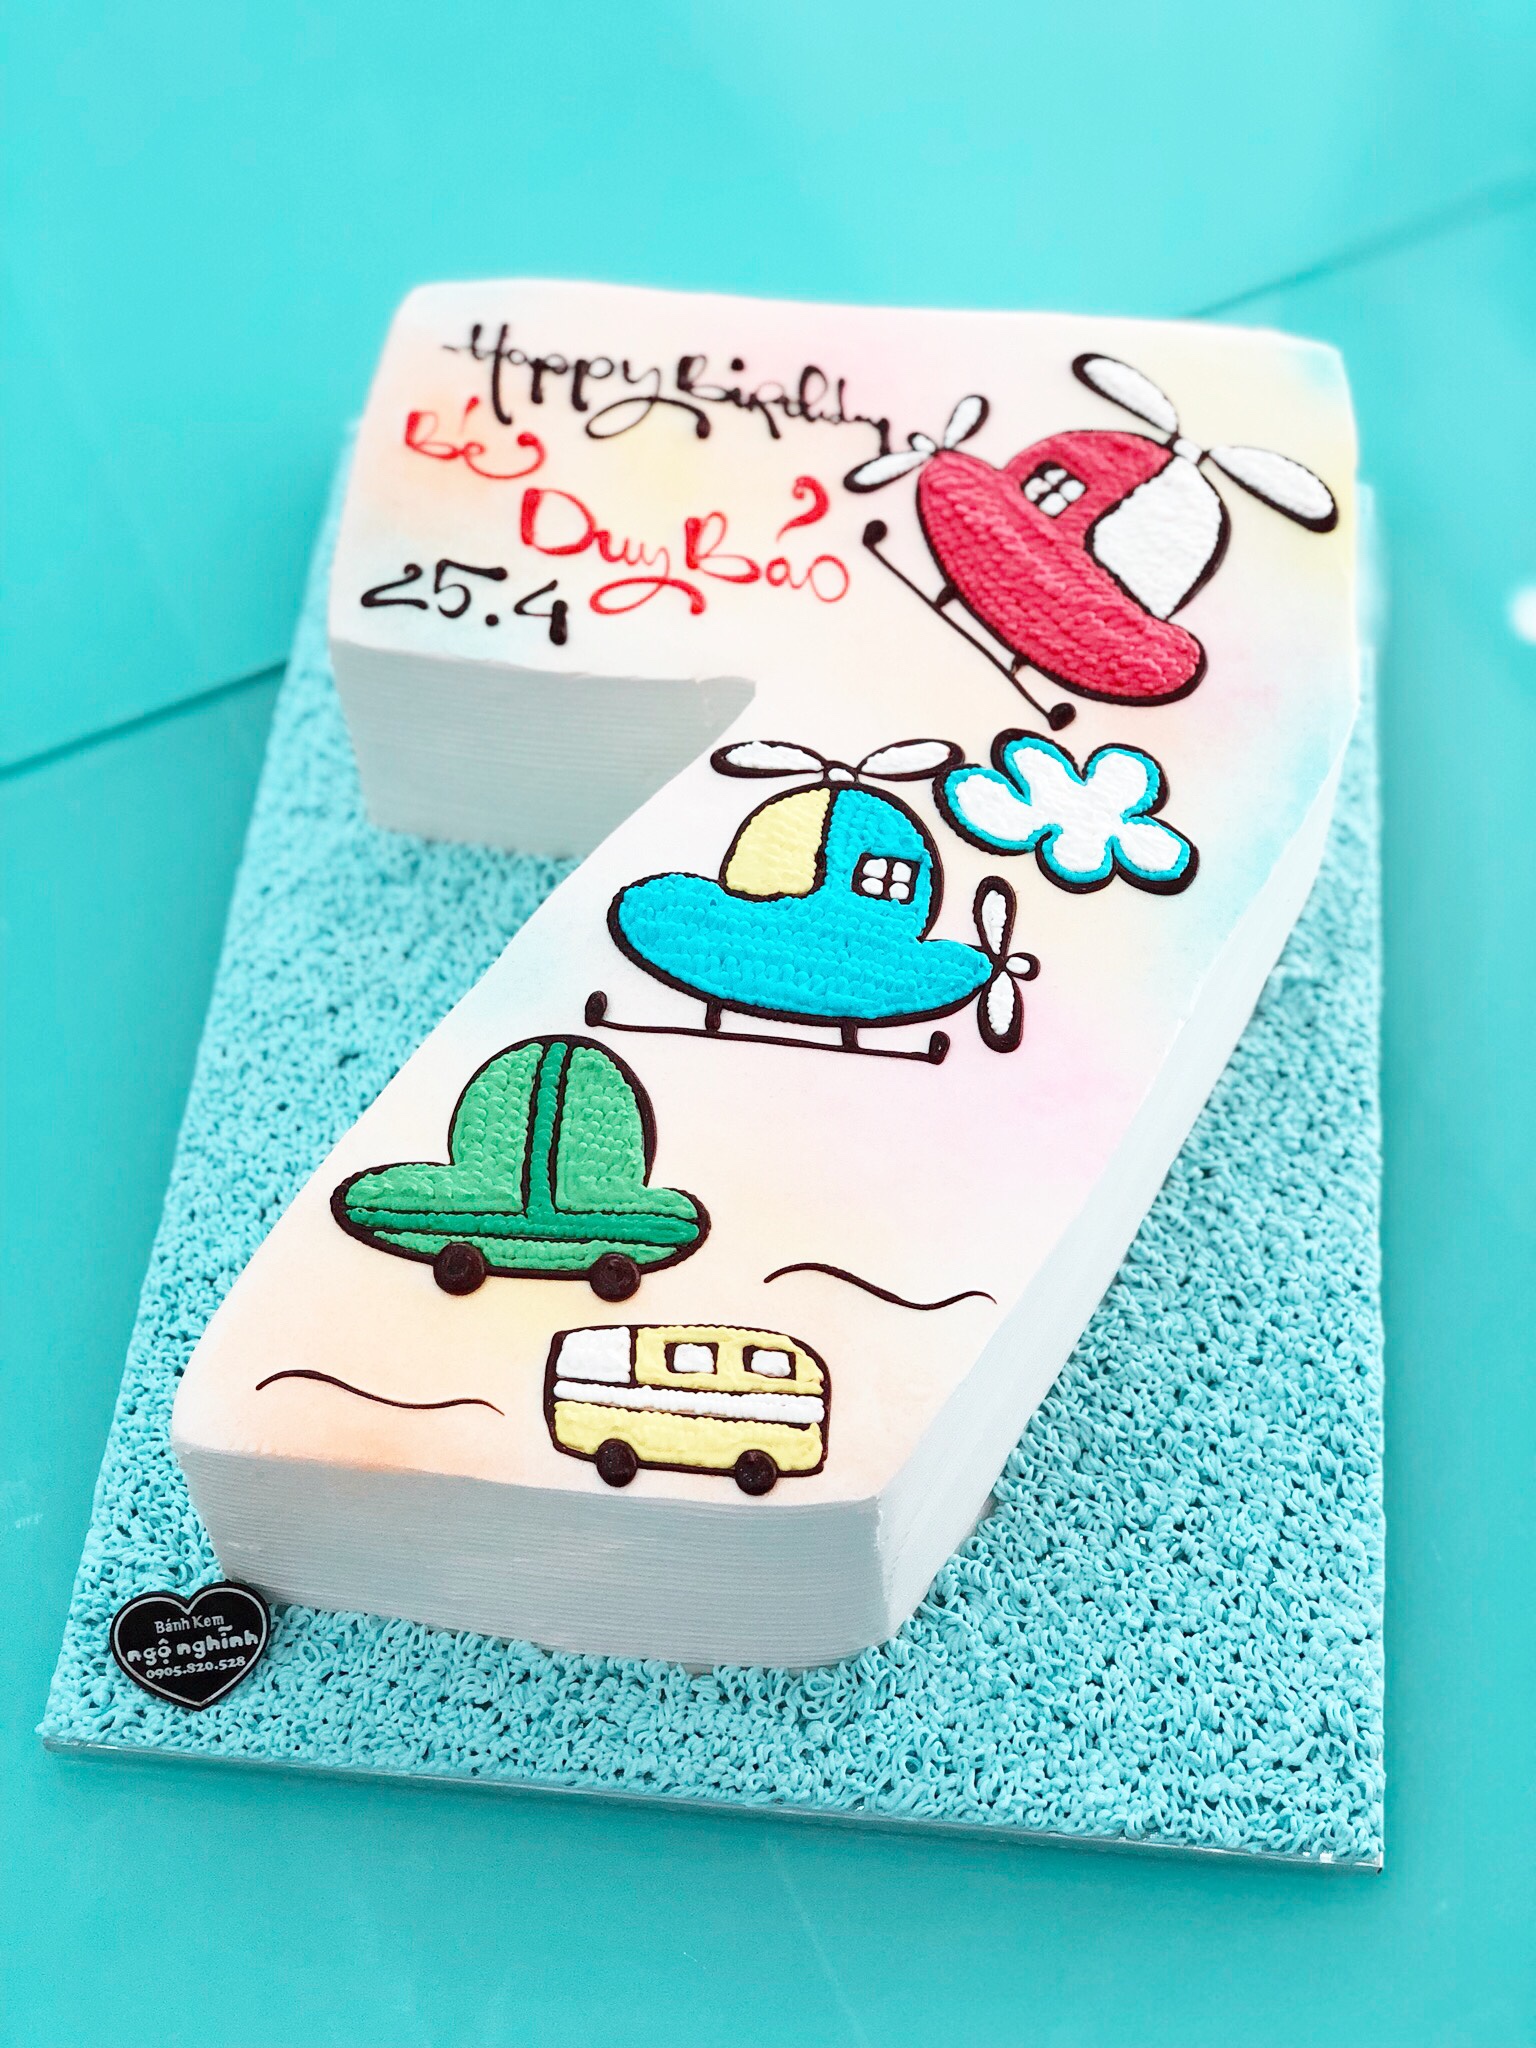 Bạn muốn cho con yêu của mình một bữa tiệc sinh nhật đầy màu sắc và độc đáo? Chiếc bánh kem sinh nhật được tạo hình 3D với số 7, máy bay và xe hơi ngộ nghĩnh sẽ làm bé kinh ngạc với sự tinh tế và sáng tạo của nhà bếp. Hãy xem bức ảnh để cảm nhận được sự trĩu nặng của bánh và sự kỳ diệu của nghệ thuật làm bánh!